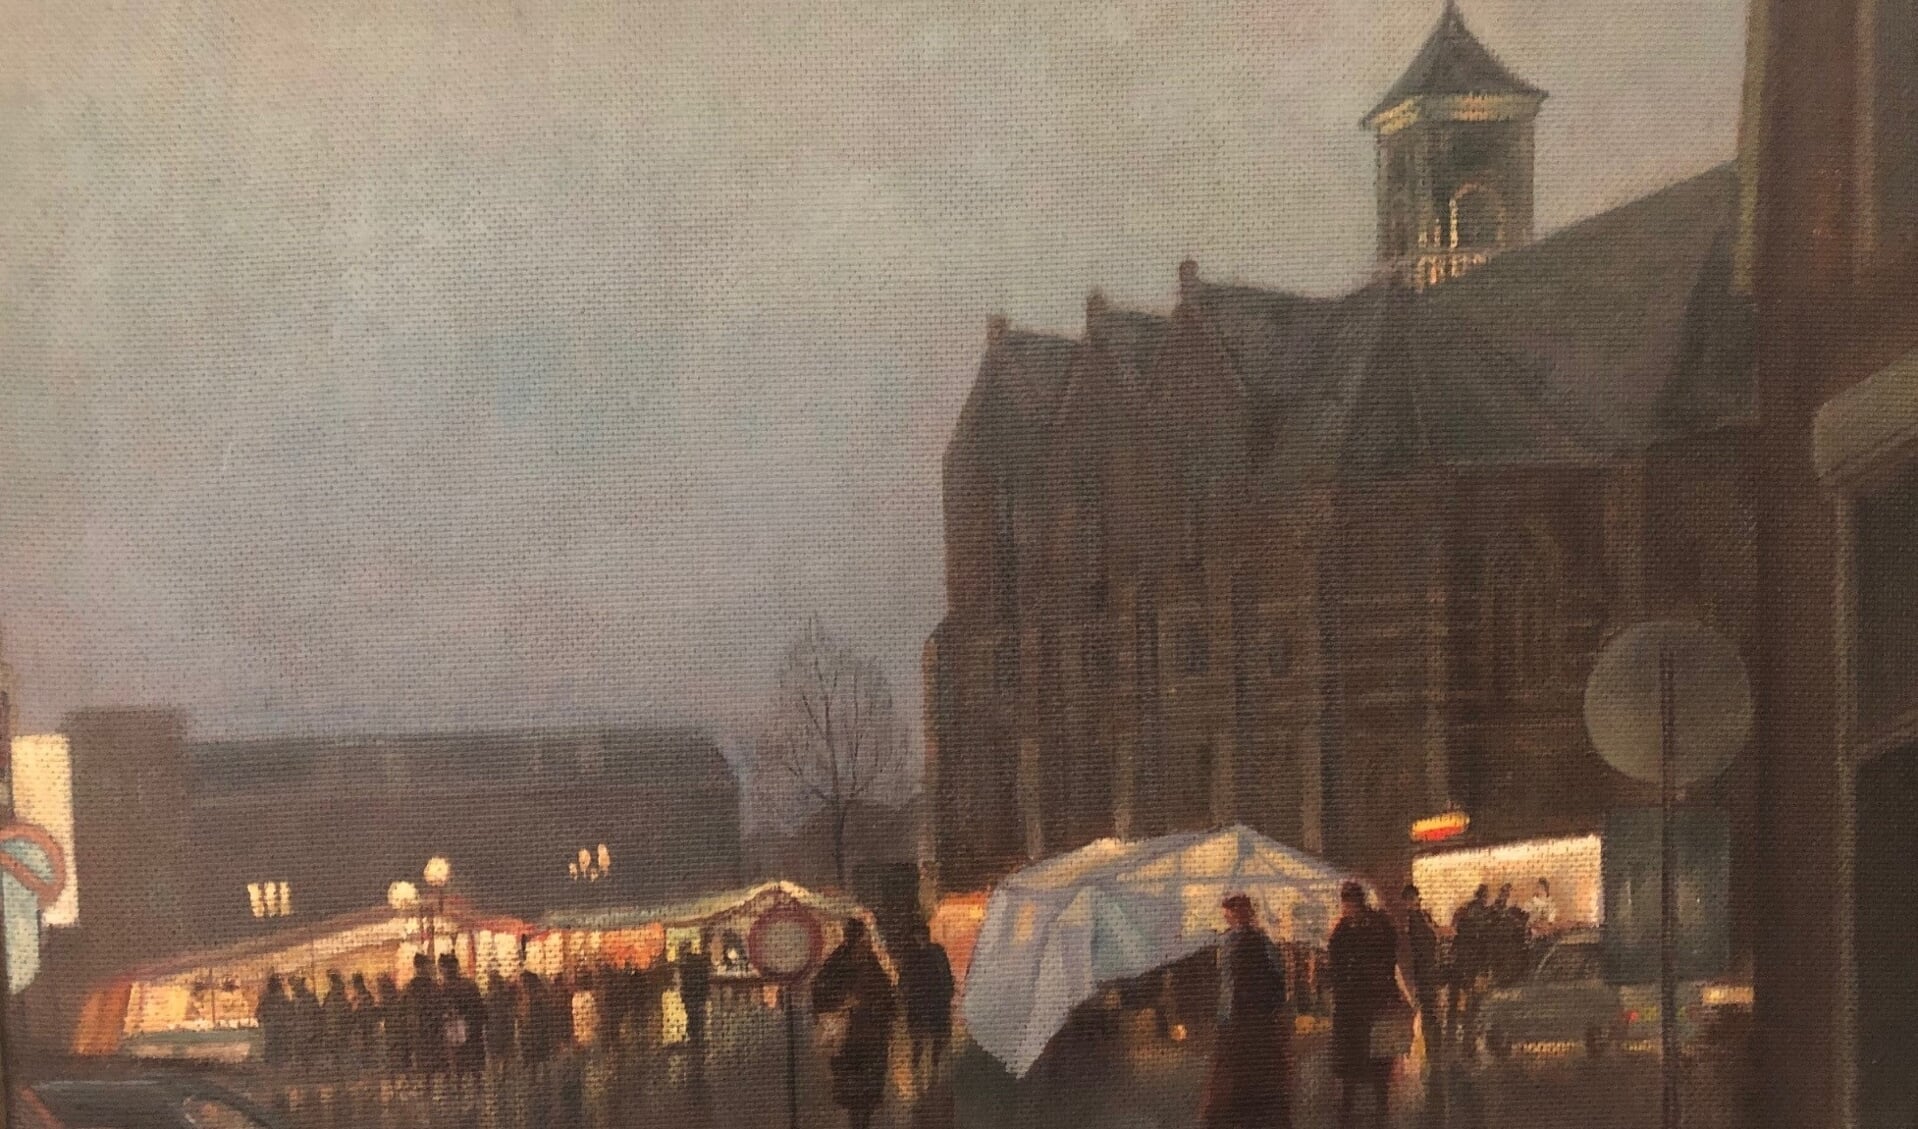 Het sfeervolle schilderij Rijssense Markt van Harry te Lintelo.